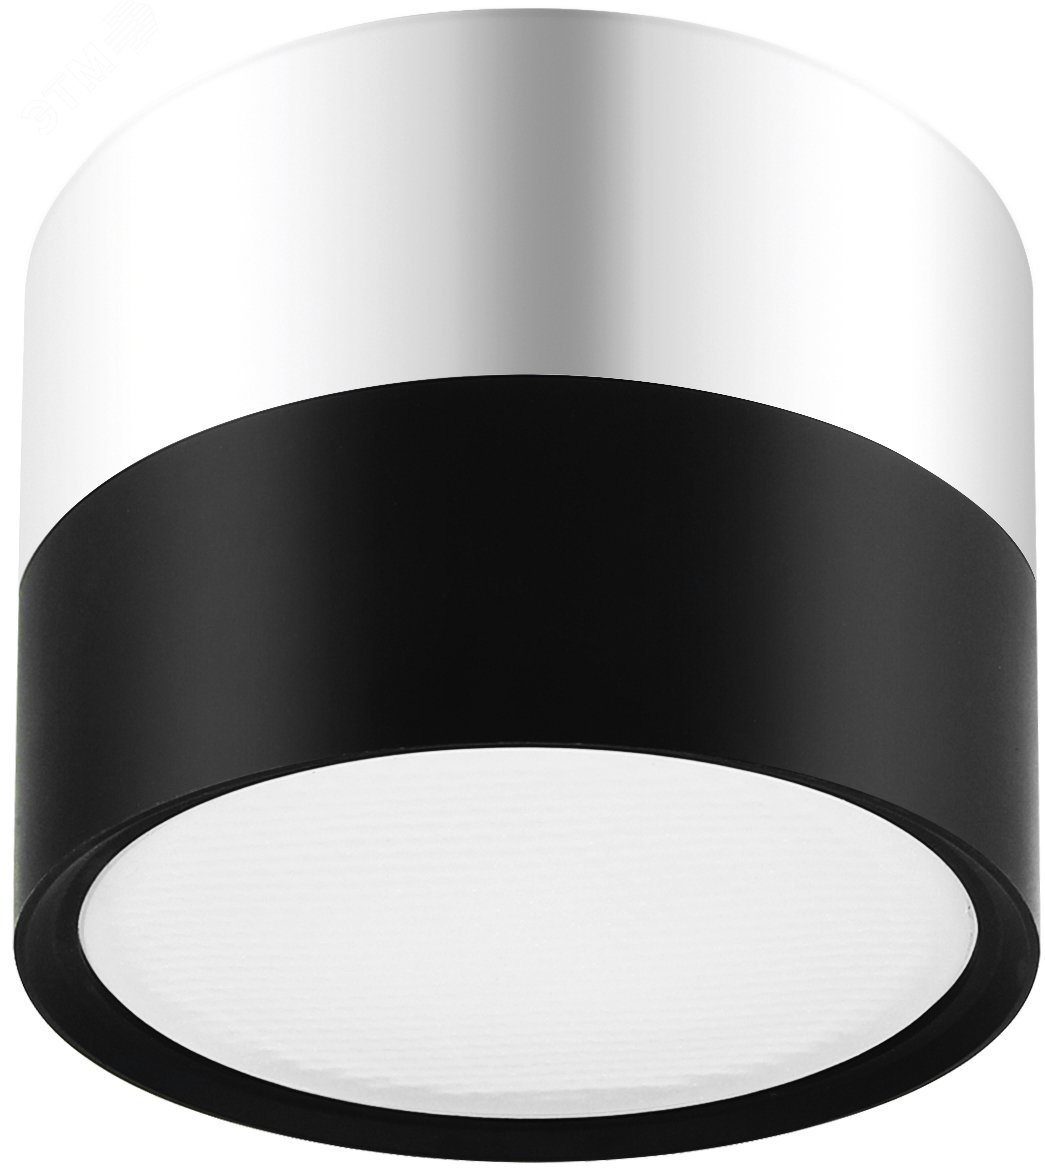 Светильник светодиодный накладной под лампу Gx53, алюминий, цвет черный+хром подсветка OL7 GX53 BK/CH Б0048531 ЭРА